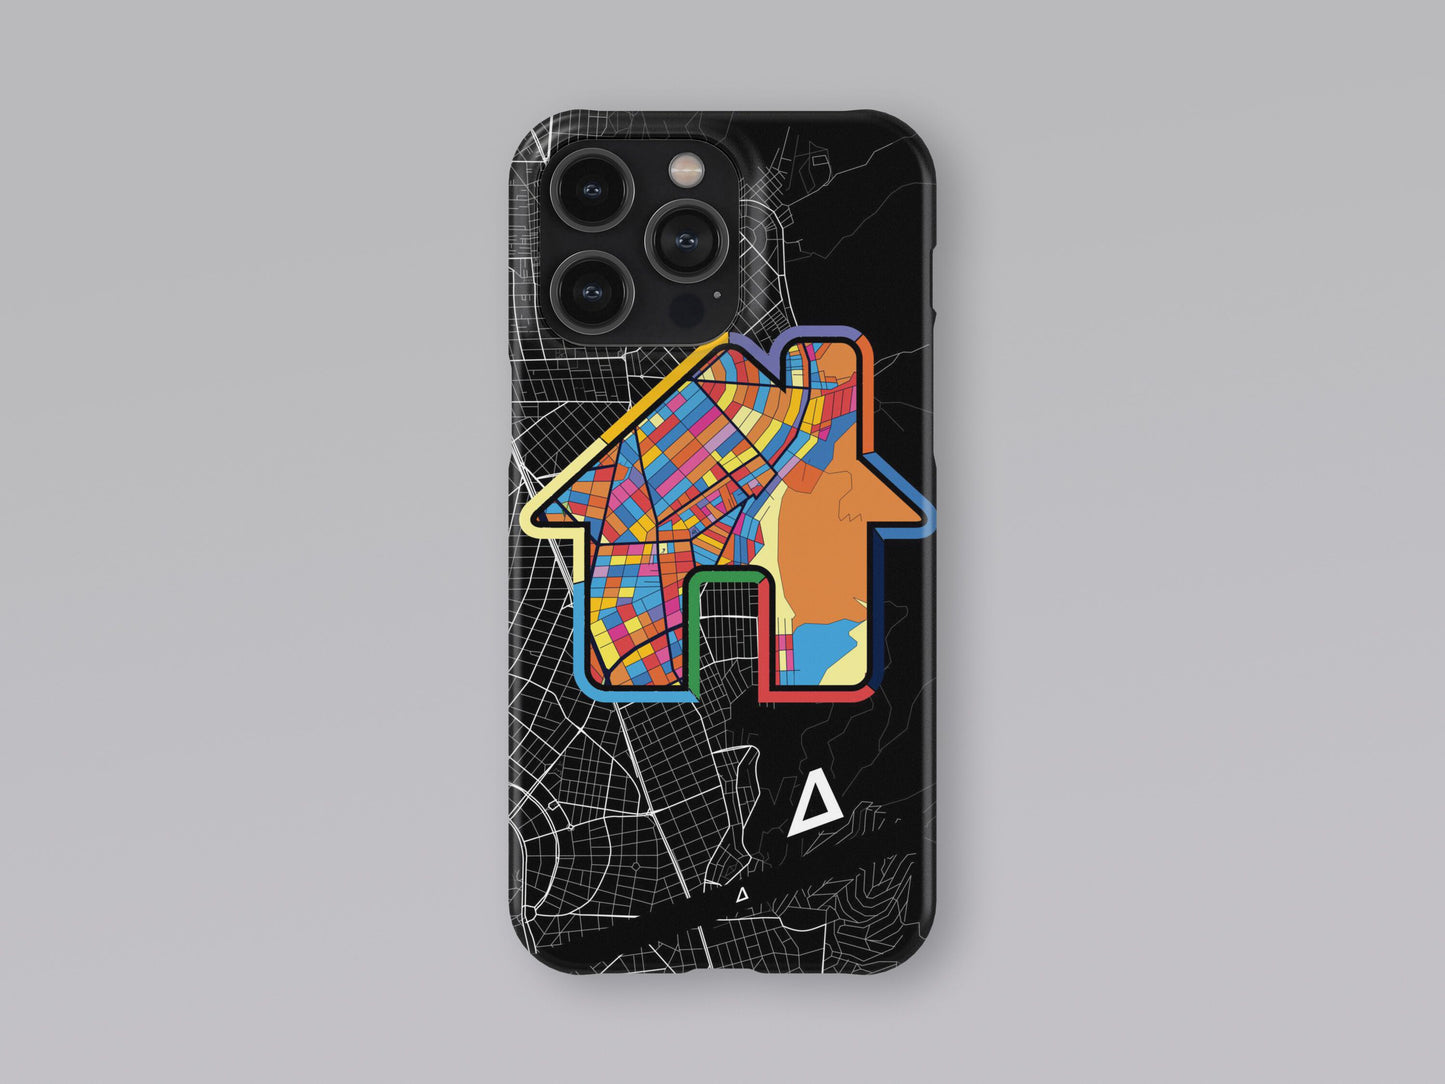 Γλυφαδα Ελλαδα slim phone case with colorful icon. Birthday, wedding or housewarming gift. Couple match cases. 3